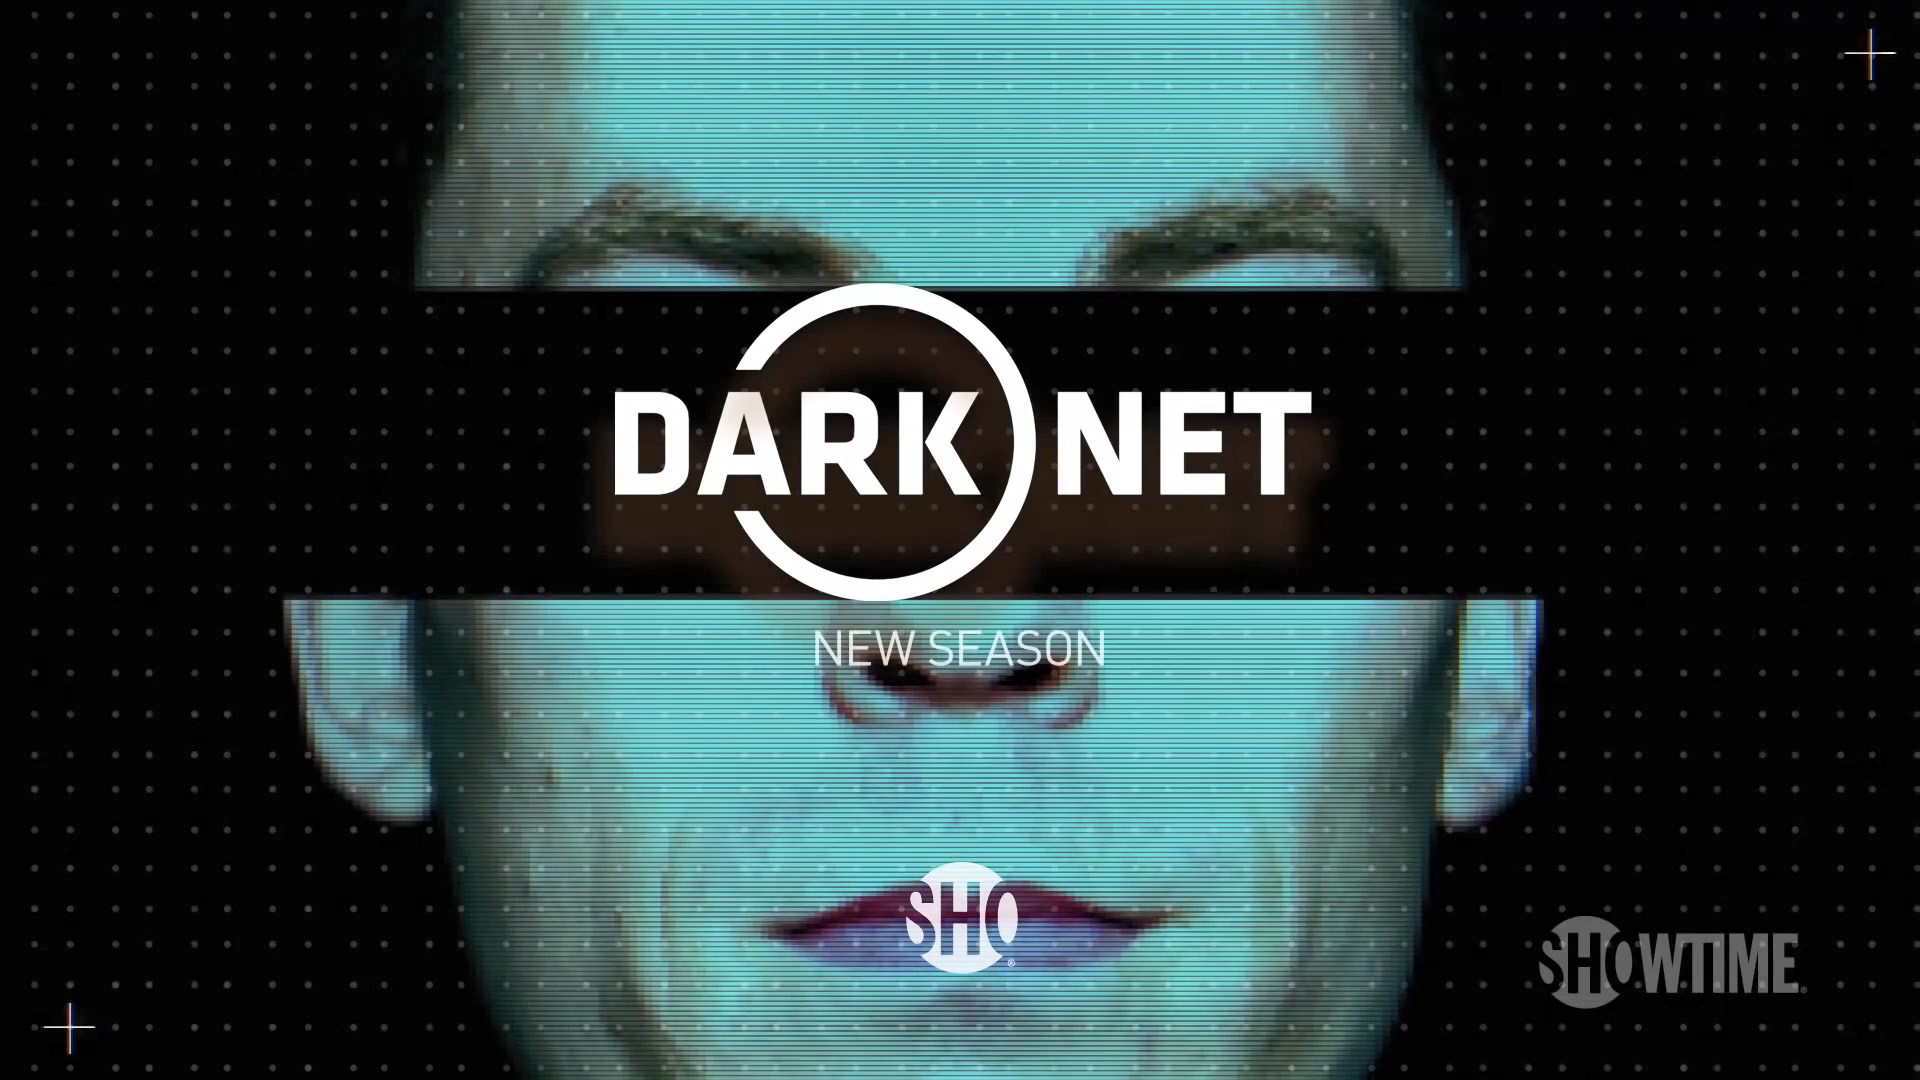 Dark Net S2 / Dark Net S2 (2017)